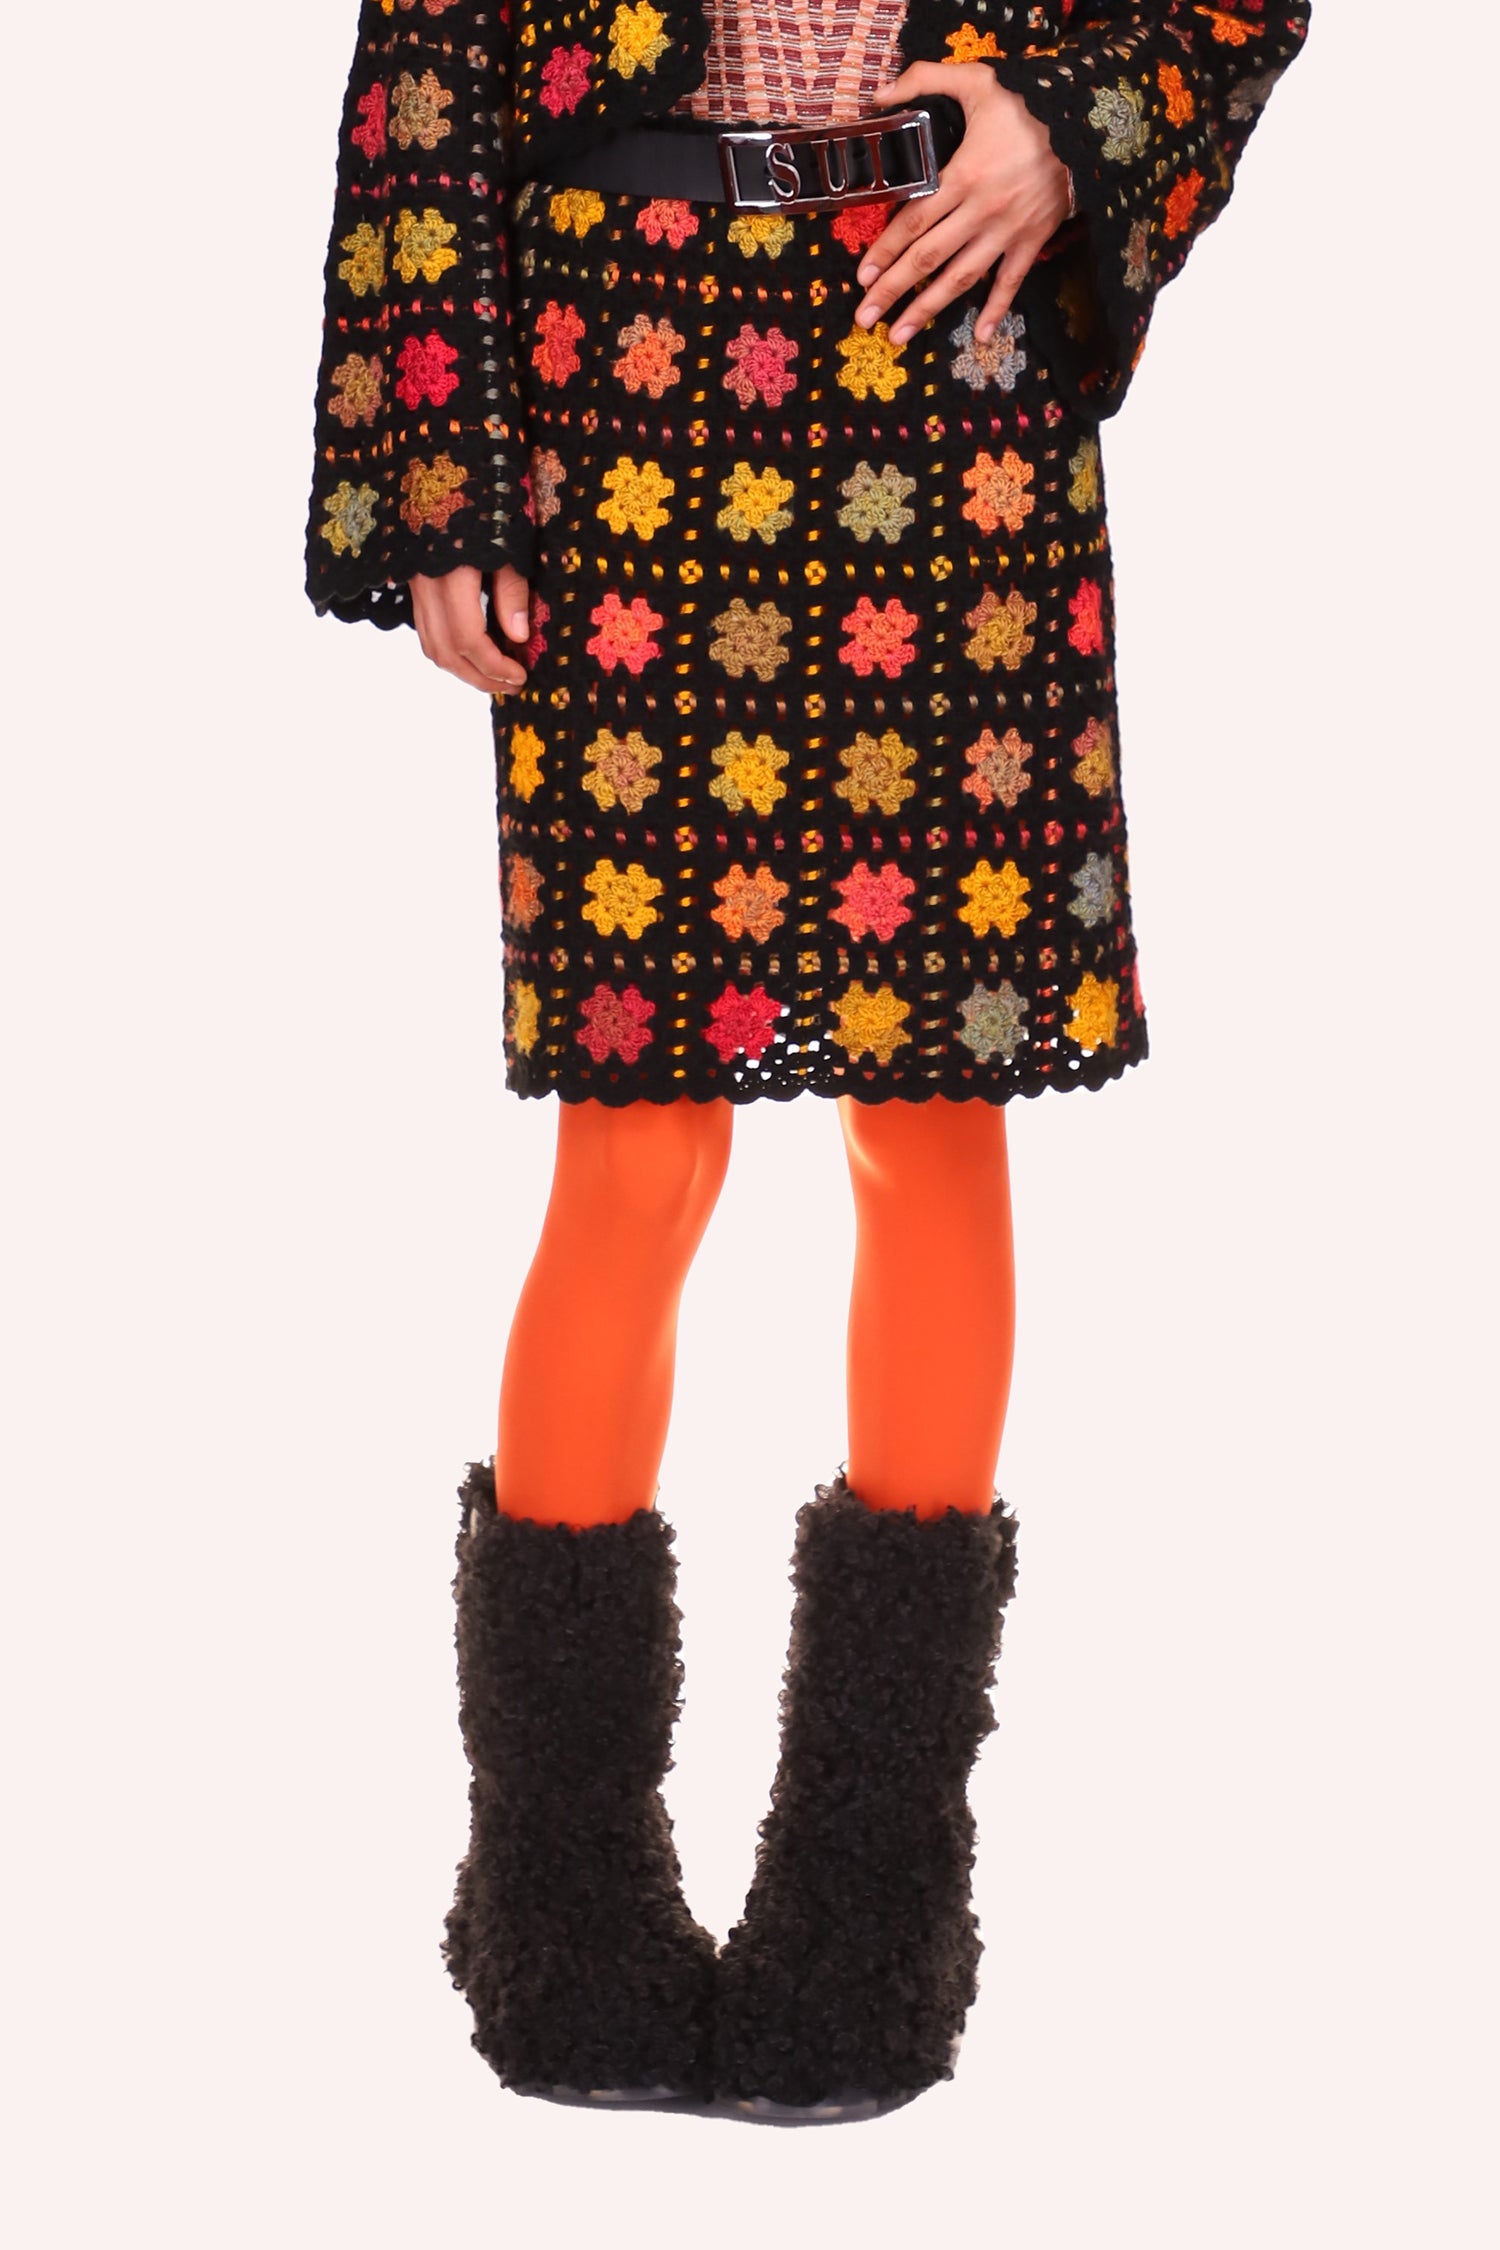 Stainglass Crochet Skirt Orange, knees long, pattern of squares of orange dots, stars like in Orange, red, blue, greenish 